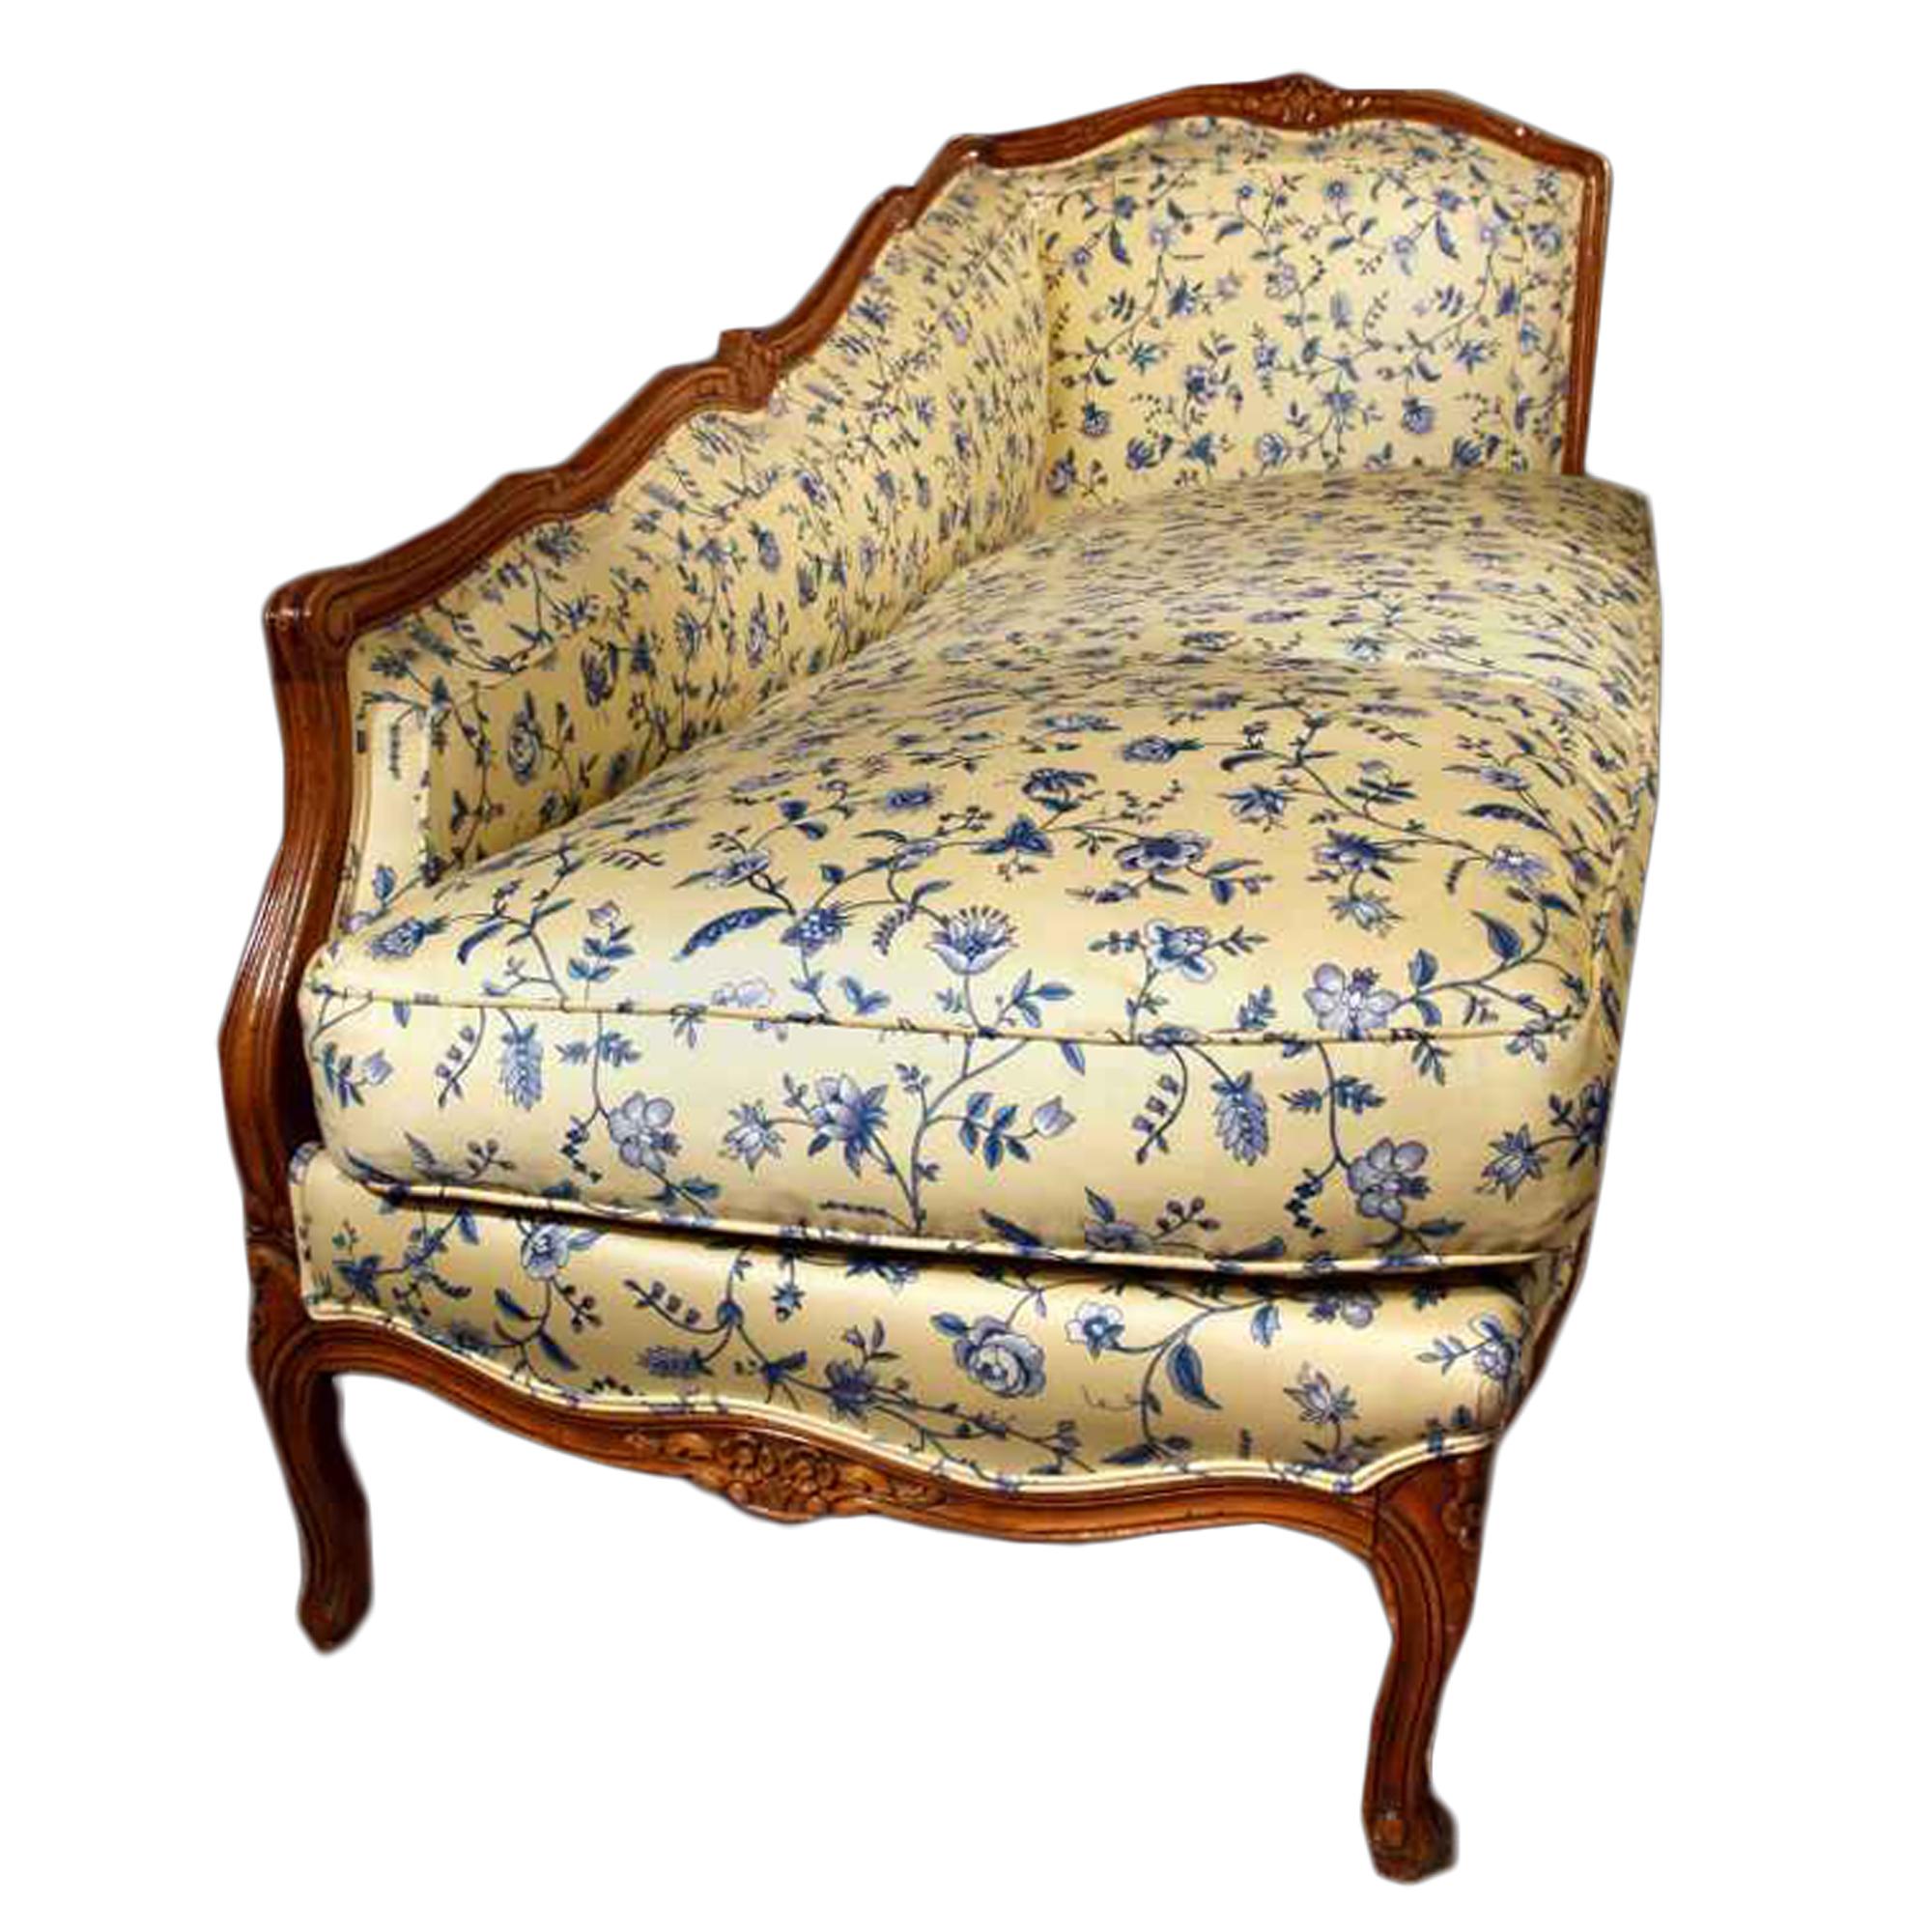 Une élégante et inhabituelle chaise de salon en chêne couleur miel de style Louis XVI de la fin du 19e siècle. Tapissé sur tous les côtés d'un beau tissu bleu et jaune. Reposant sur six supports en forme de 